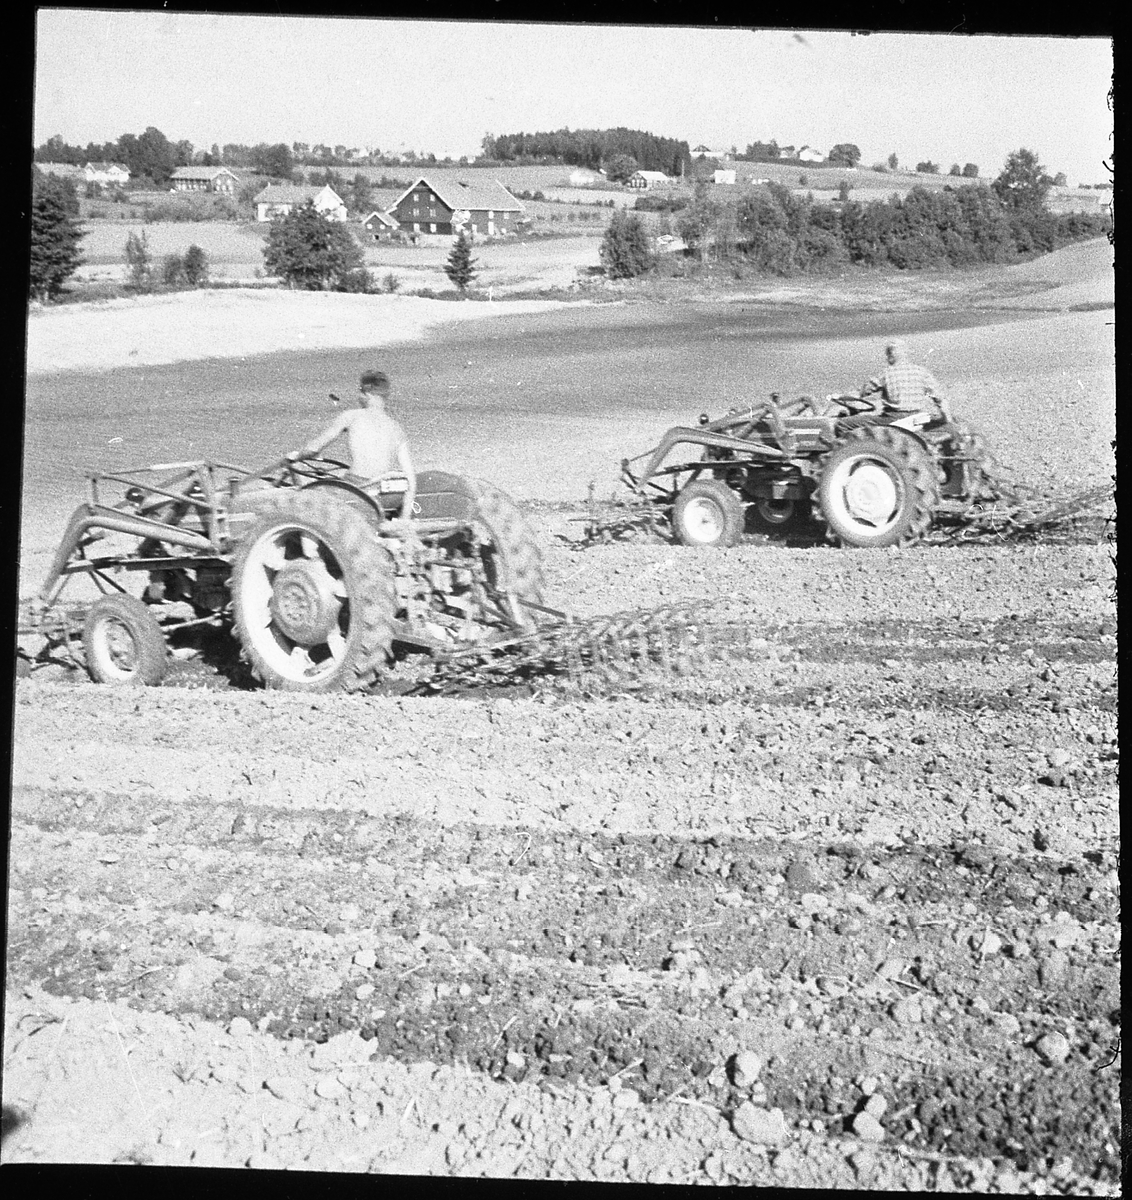 Avfotografert bilde av to traktorer som kjører våronn (harving). Stedet er ikke identifisert.